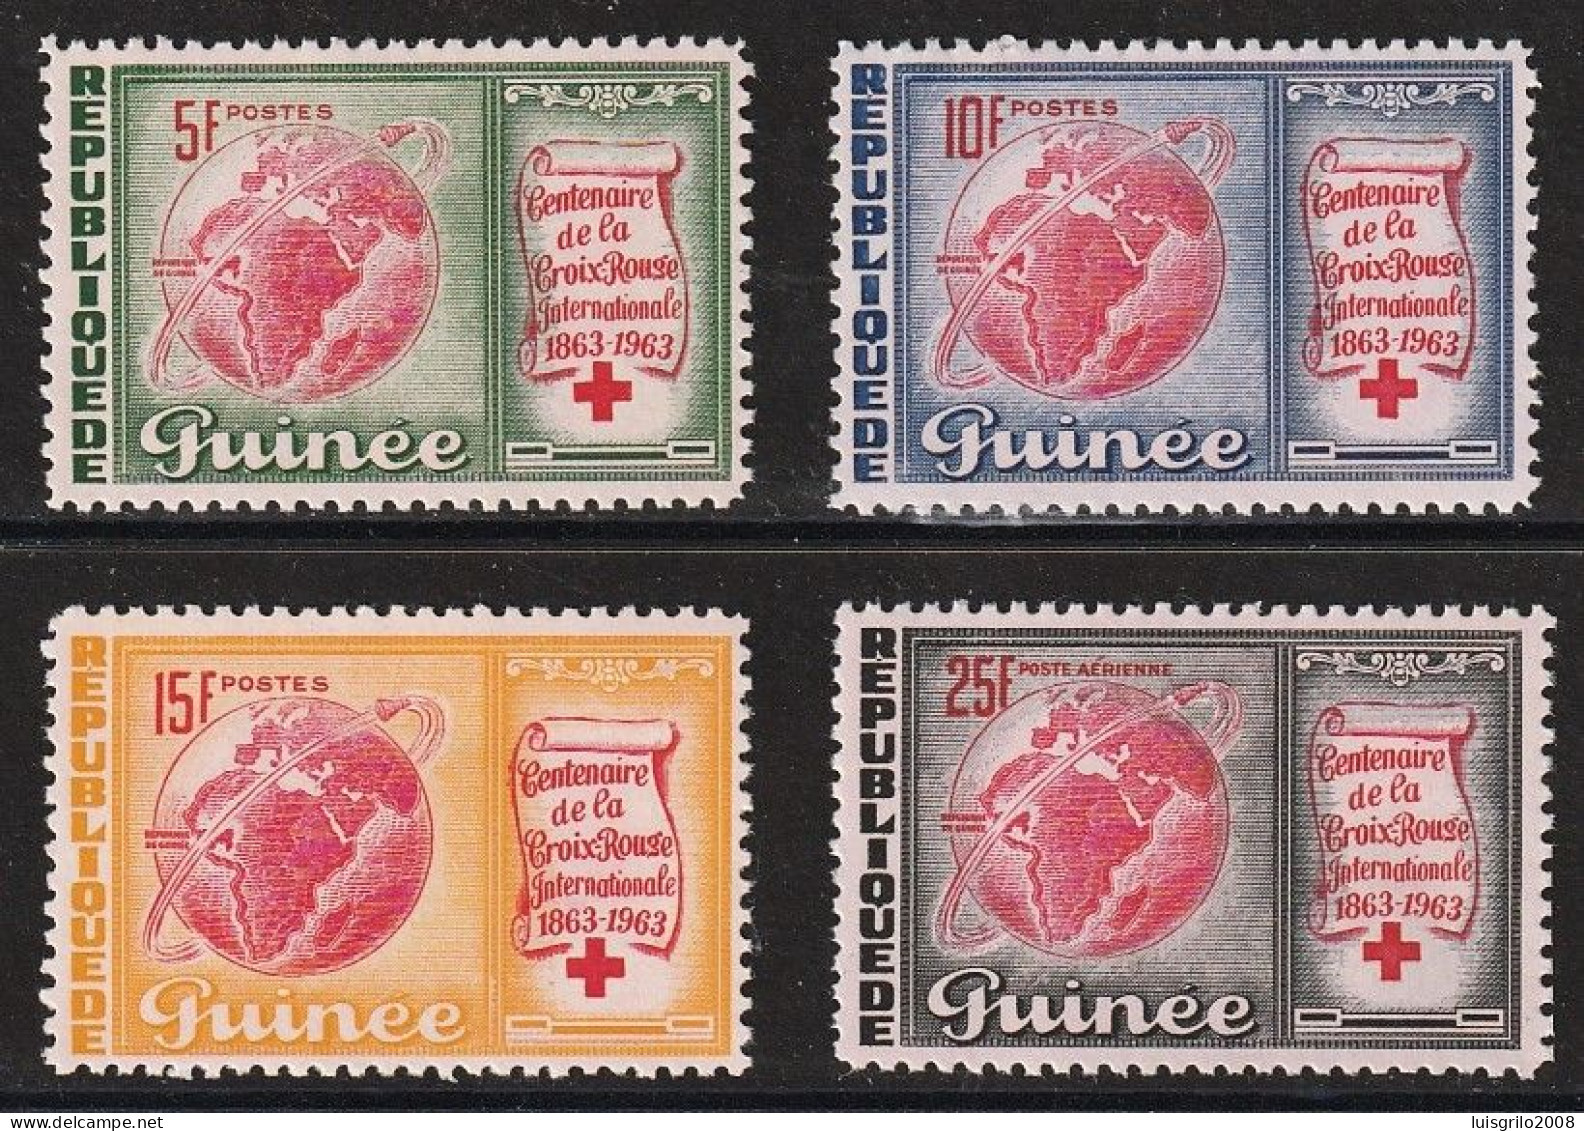 Republique De Guinee 1963 - Red Cross/ Centenaire De La Croix-Rouge -|- Série Compléte - MNH - Guinée (1958-...)